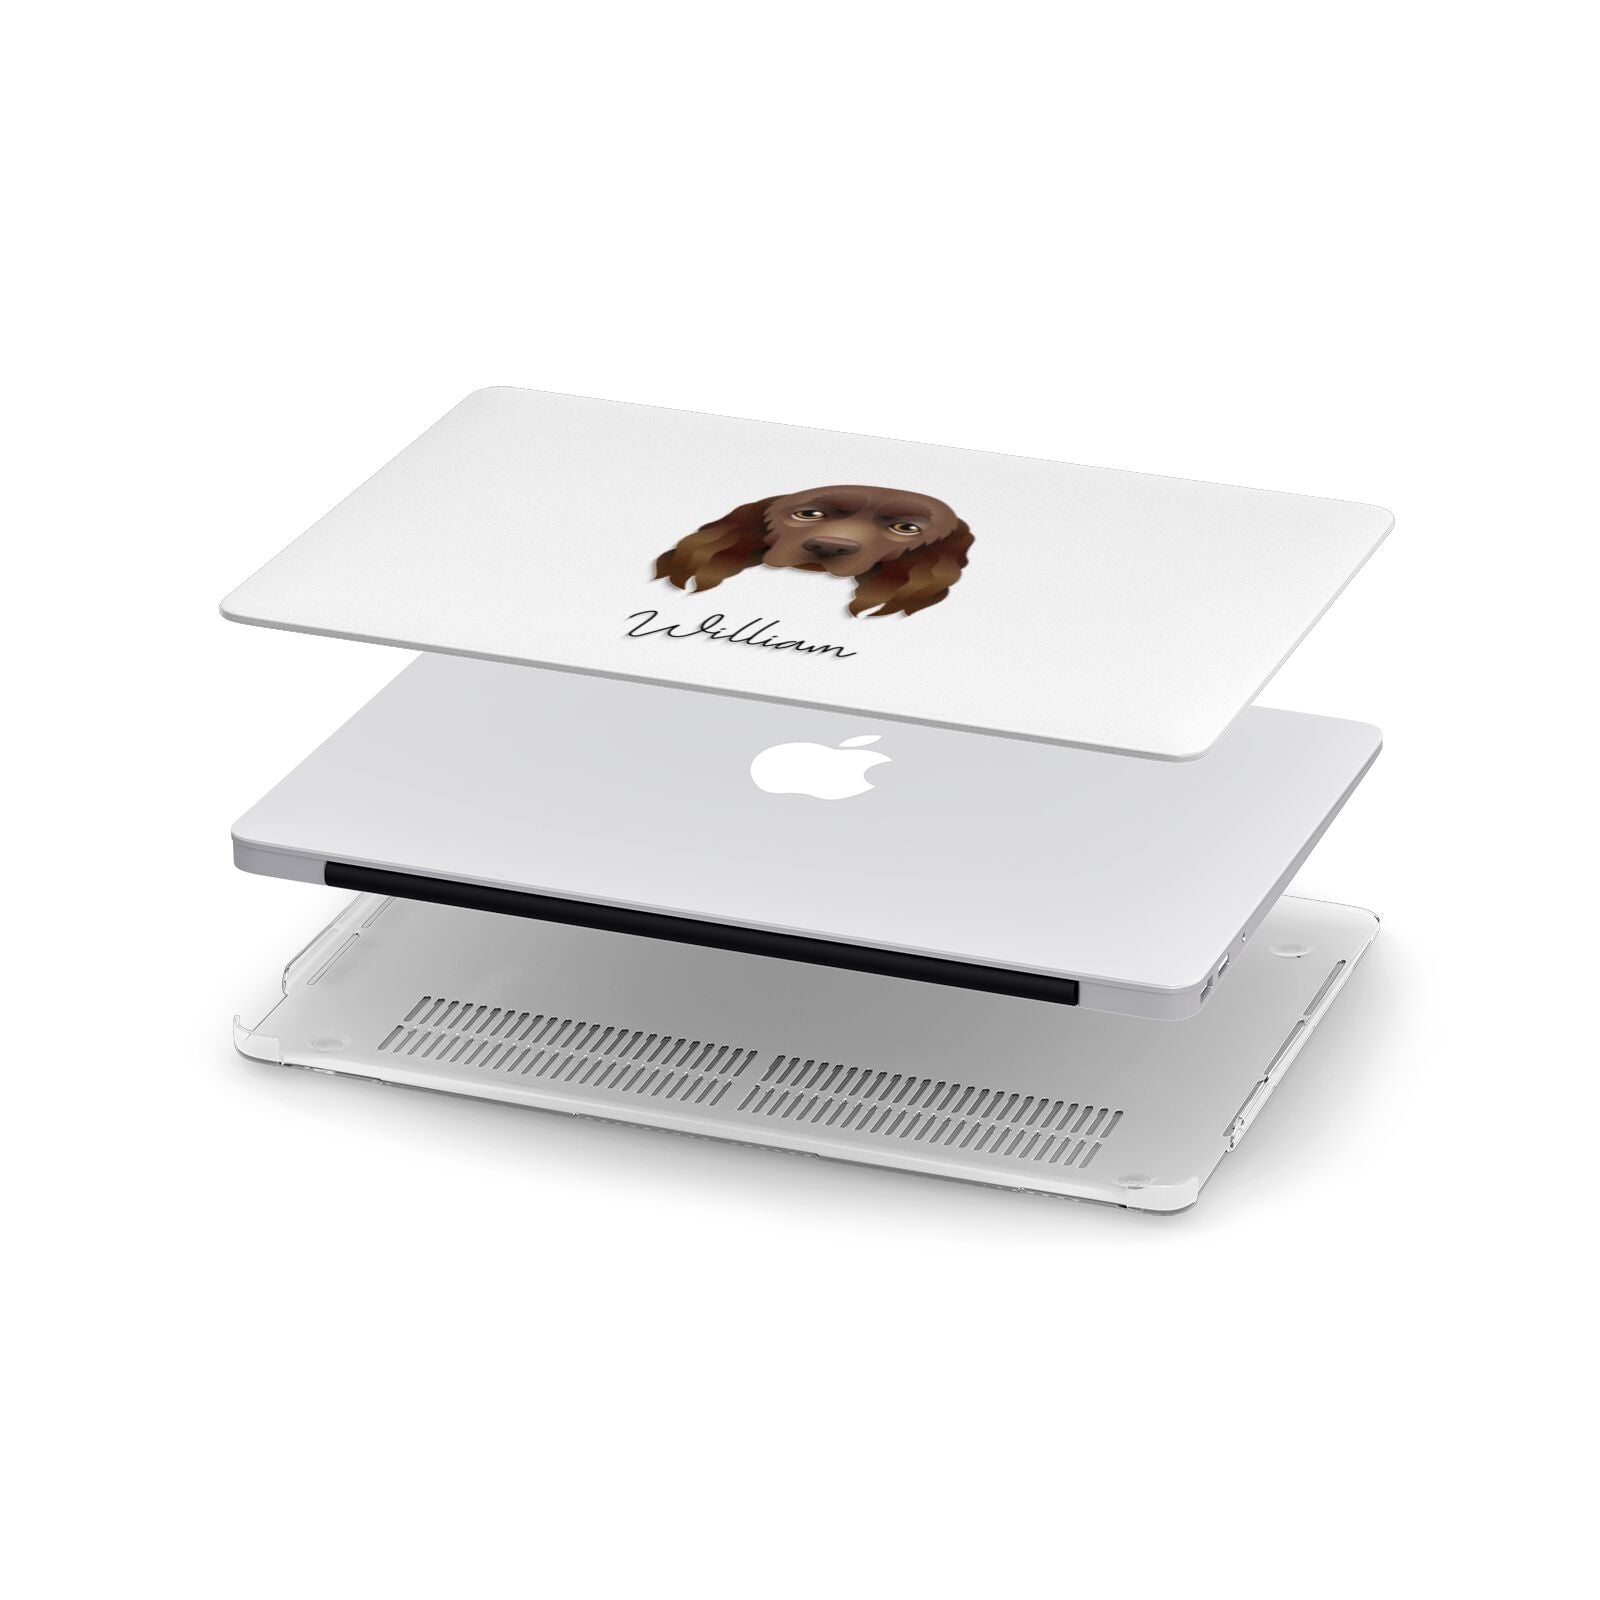 Sussex Spaniel Personalised Apple MacBook Case in Detail